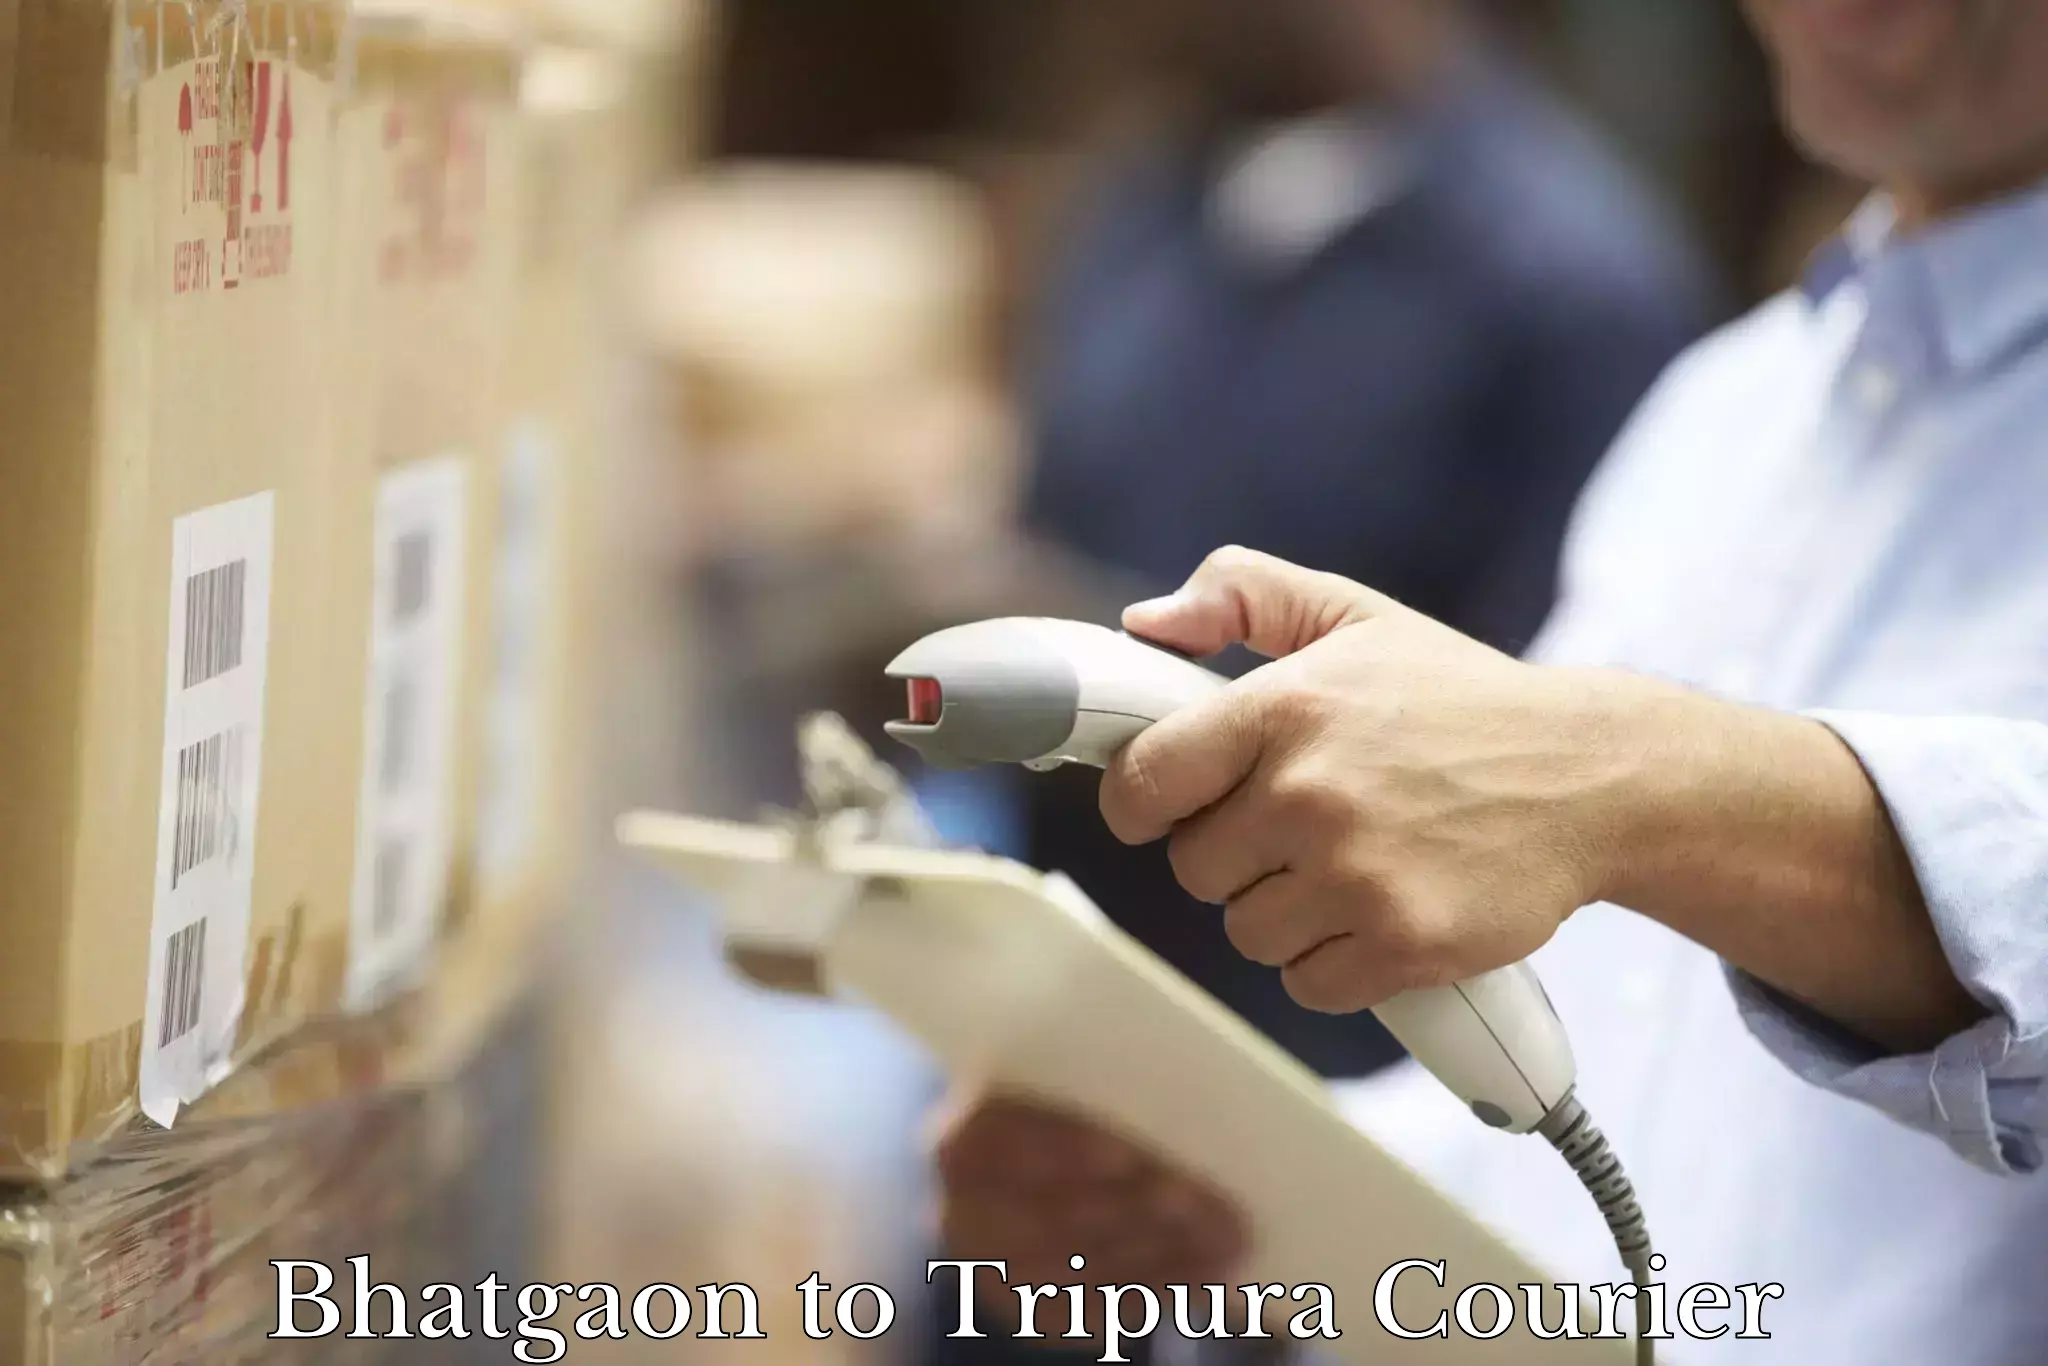 Urgent courier needs Bhatgaon to Dharmanagar